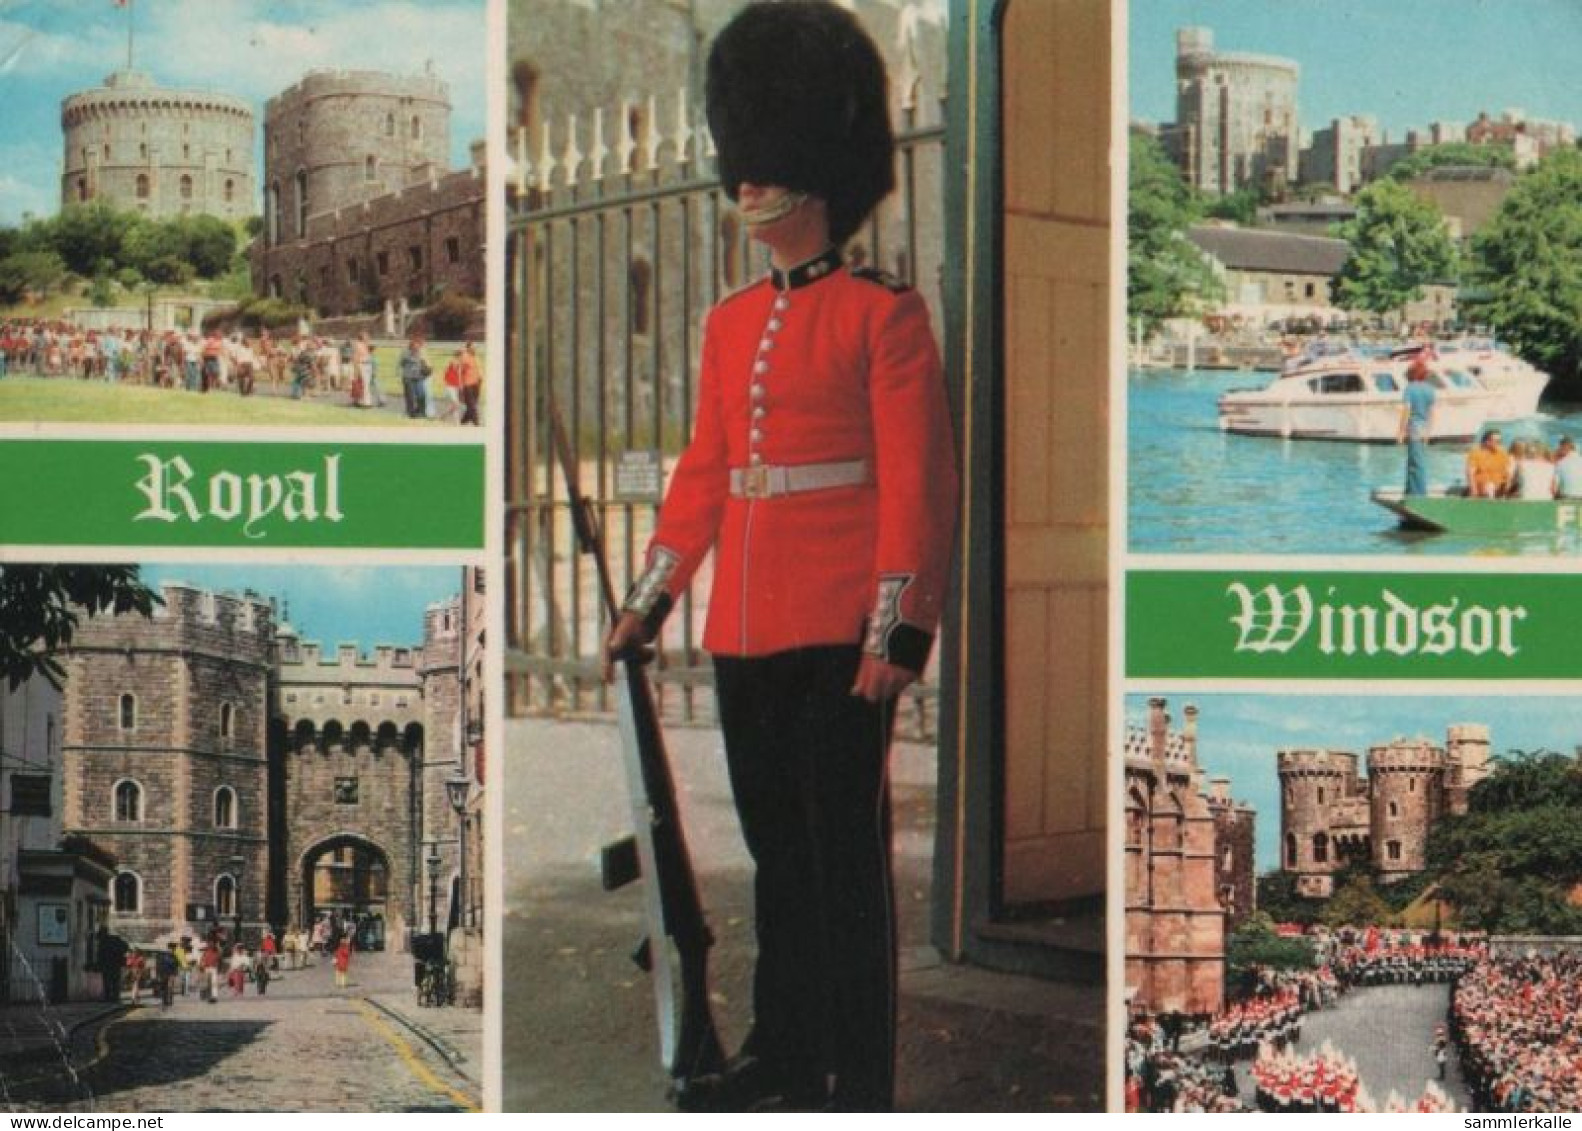 103474 - Grossbritannien - Windsor - 1982 - Windsor